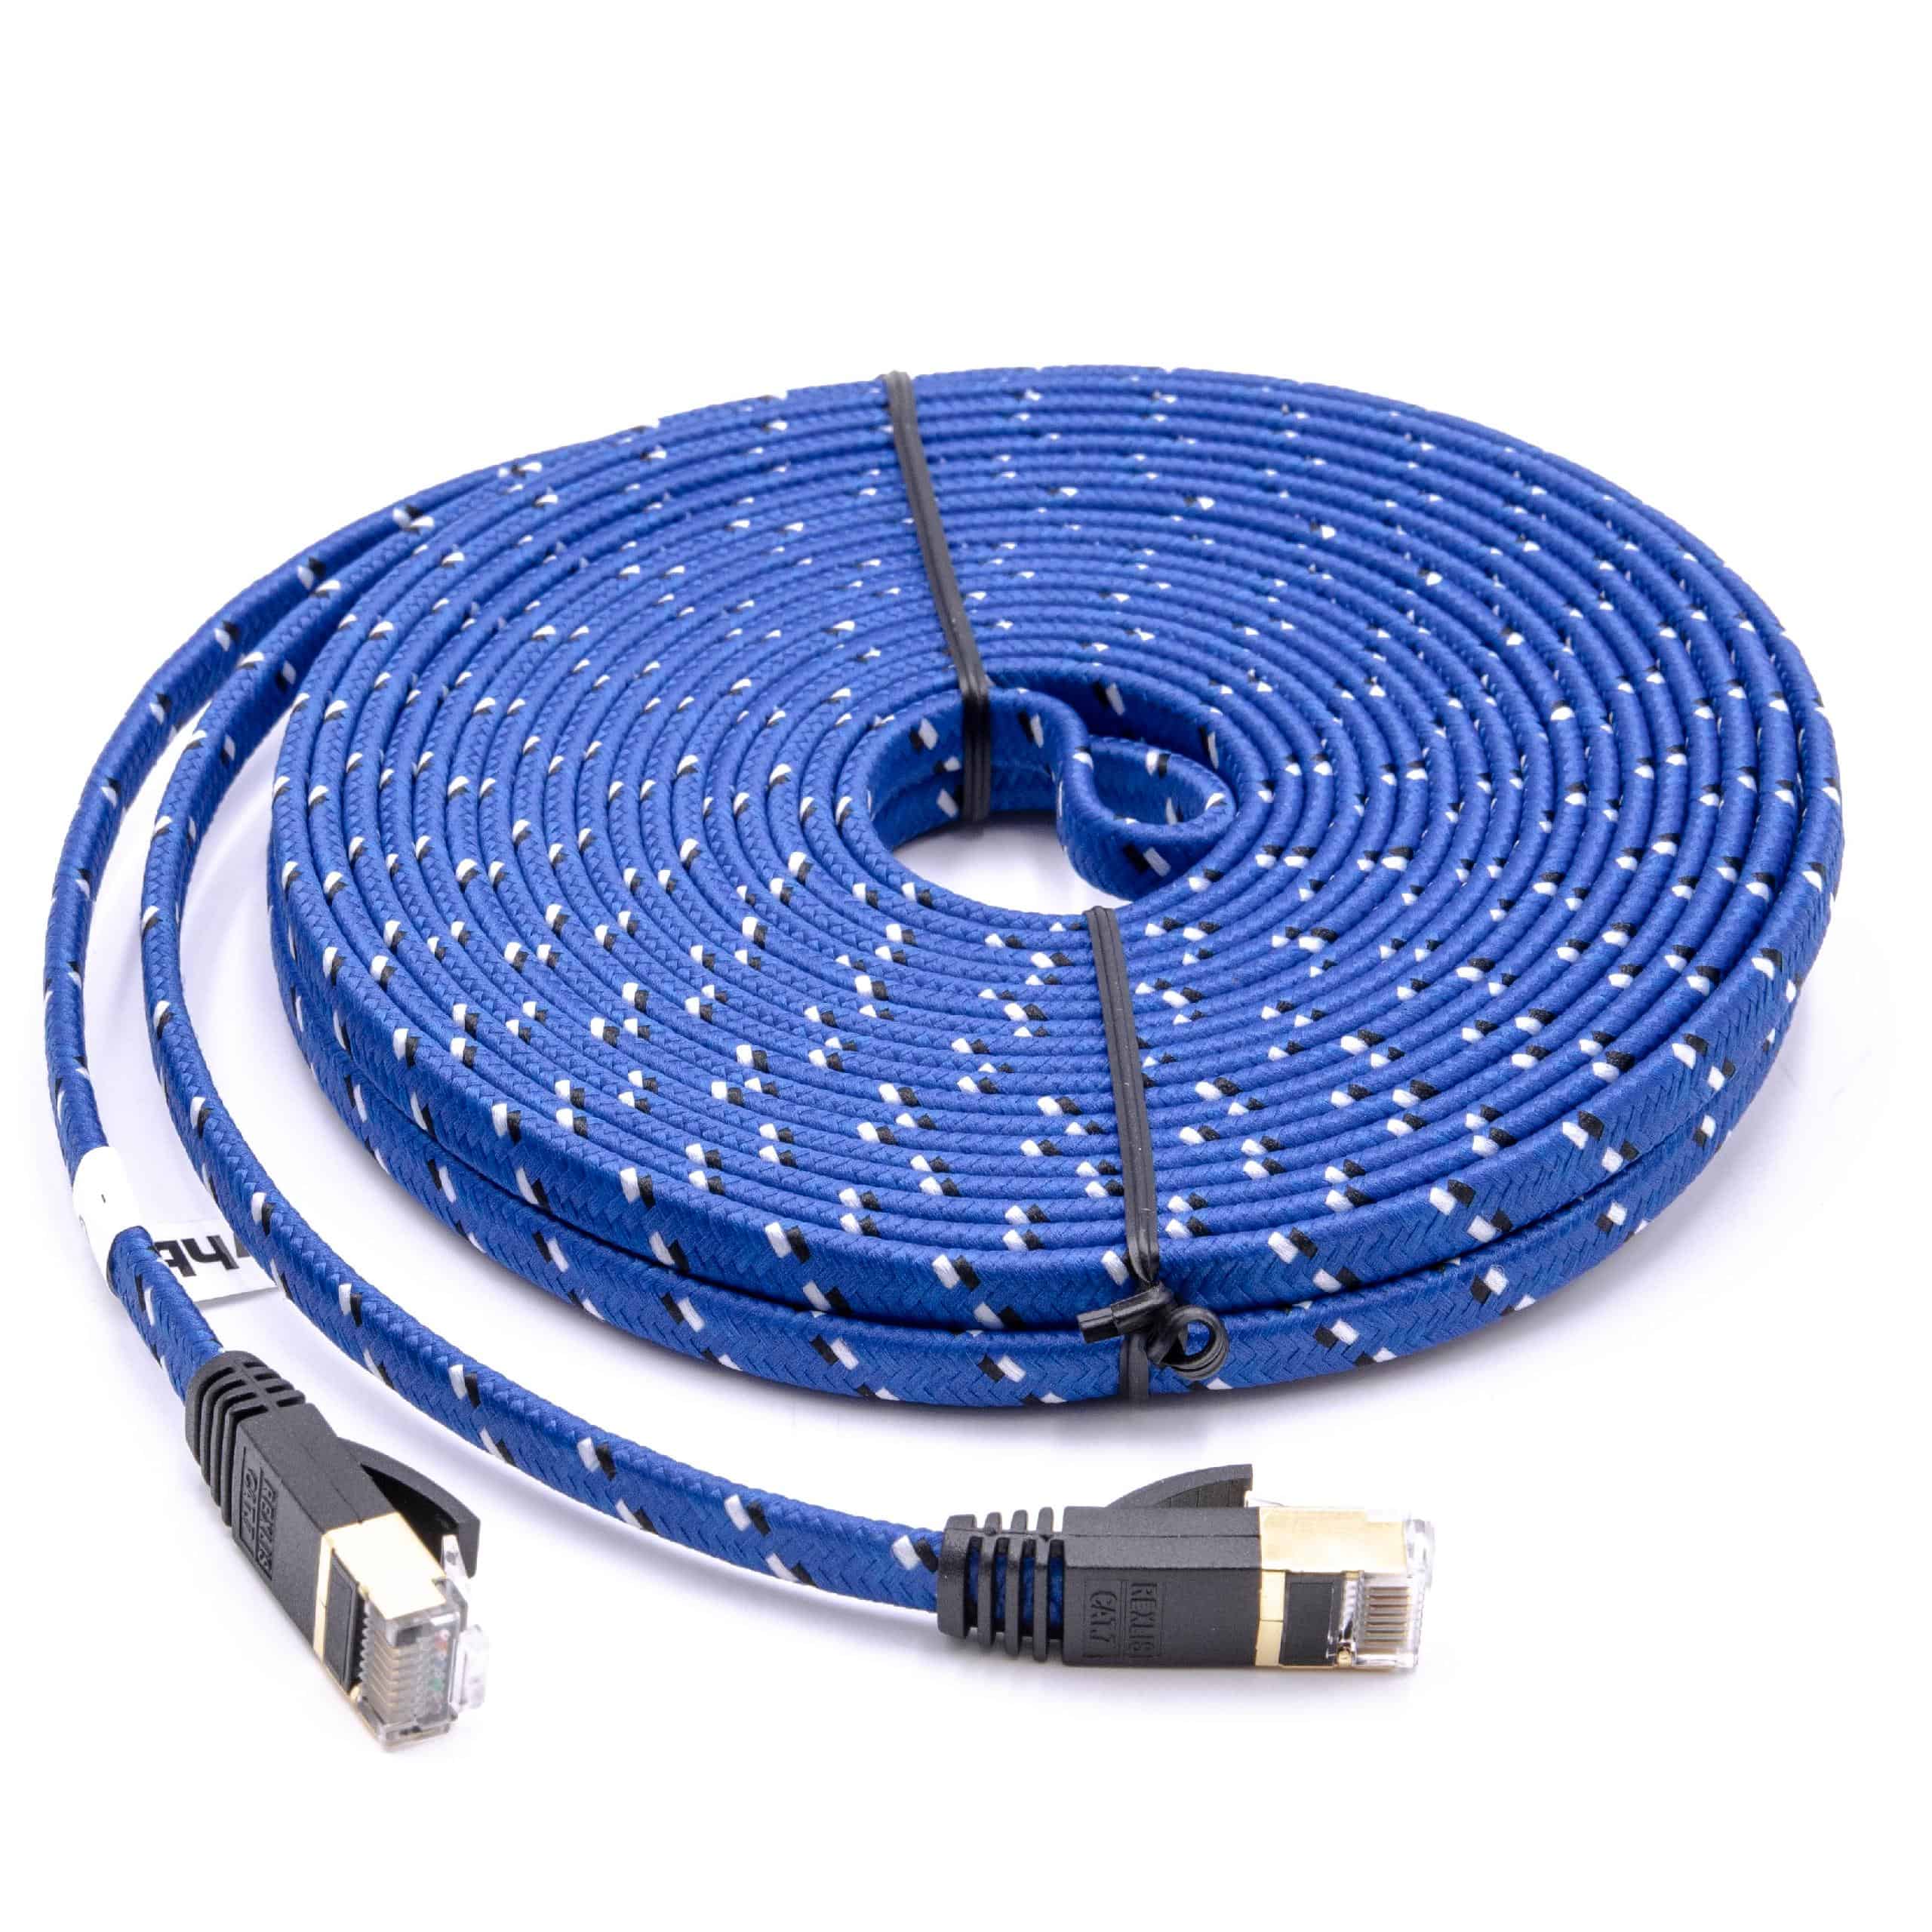 Netzwerkkabel LAN Kabel Patchkabel Cat7, 10m, blau, flach